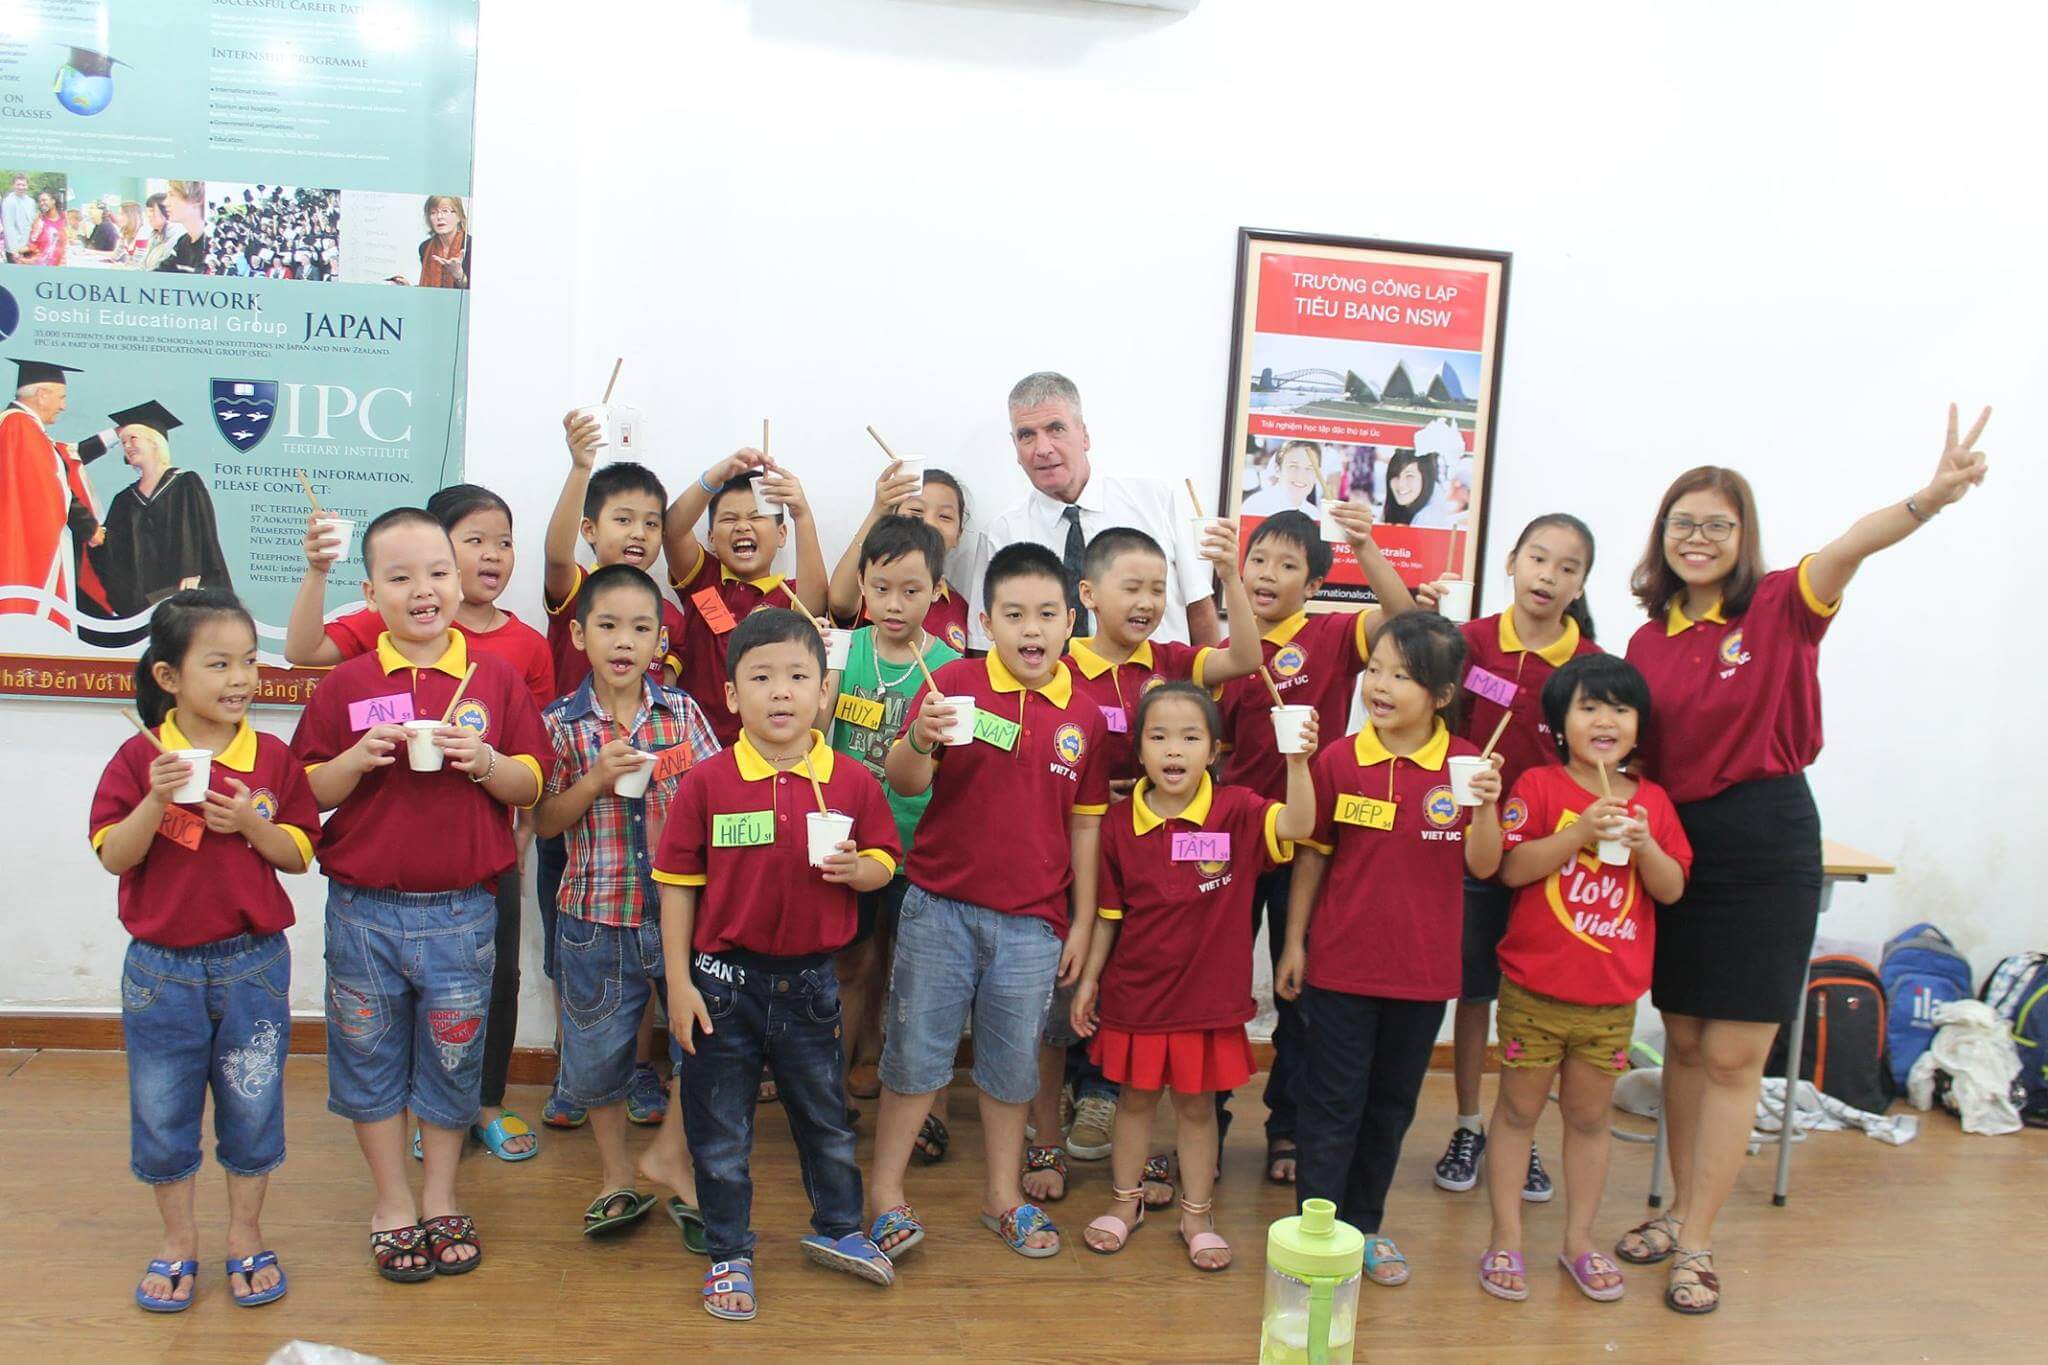 Trường anh ngữ Việt Úc luôn là môi trường học tập thân thiện với mọi lứa tuổi